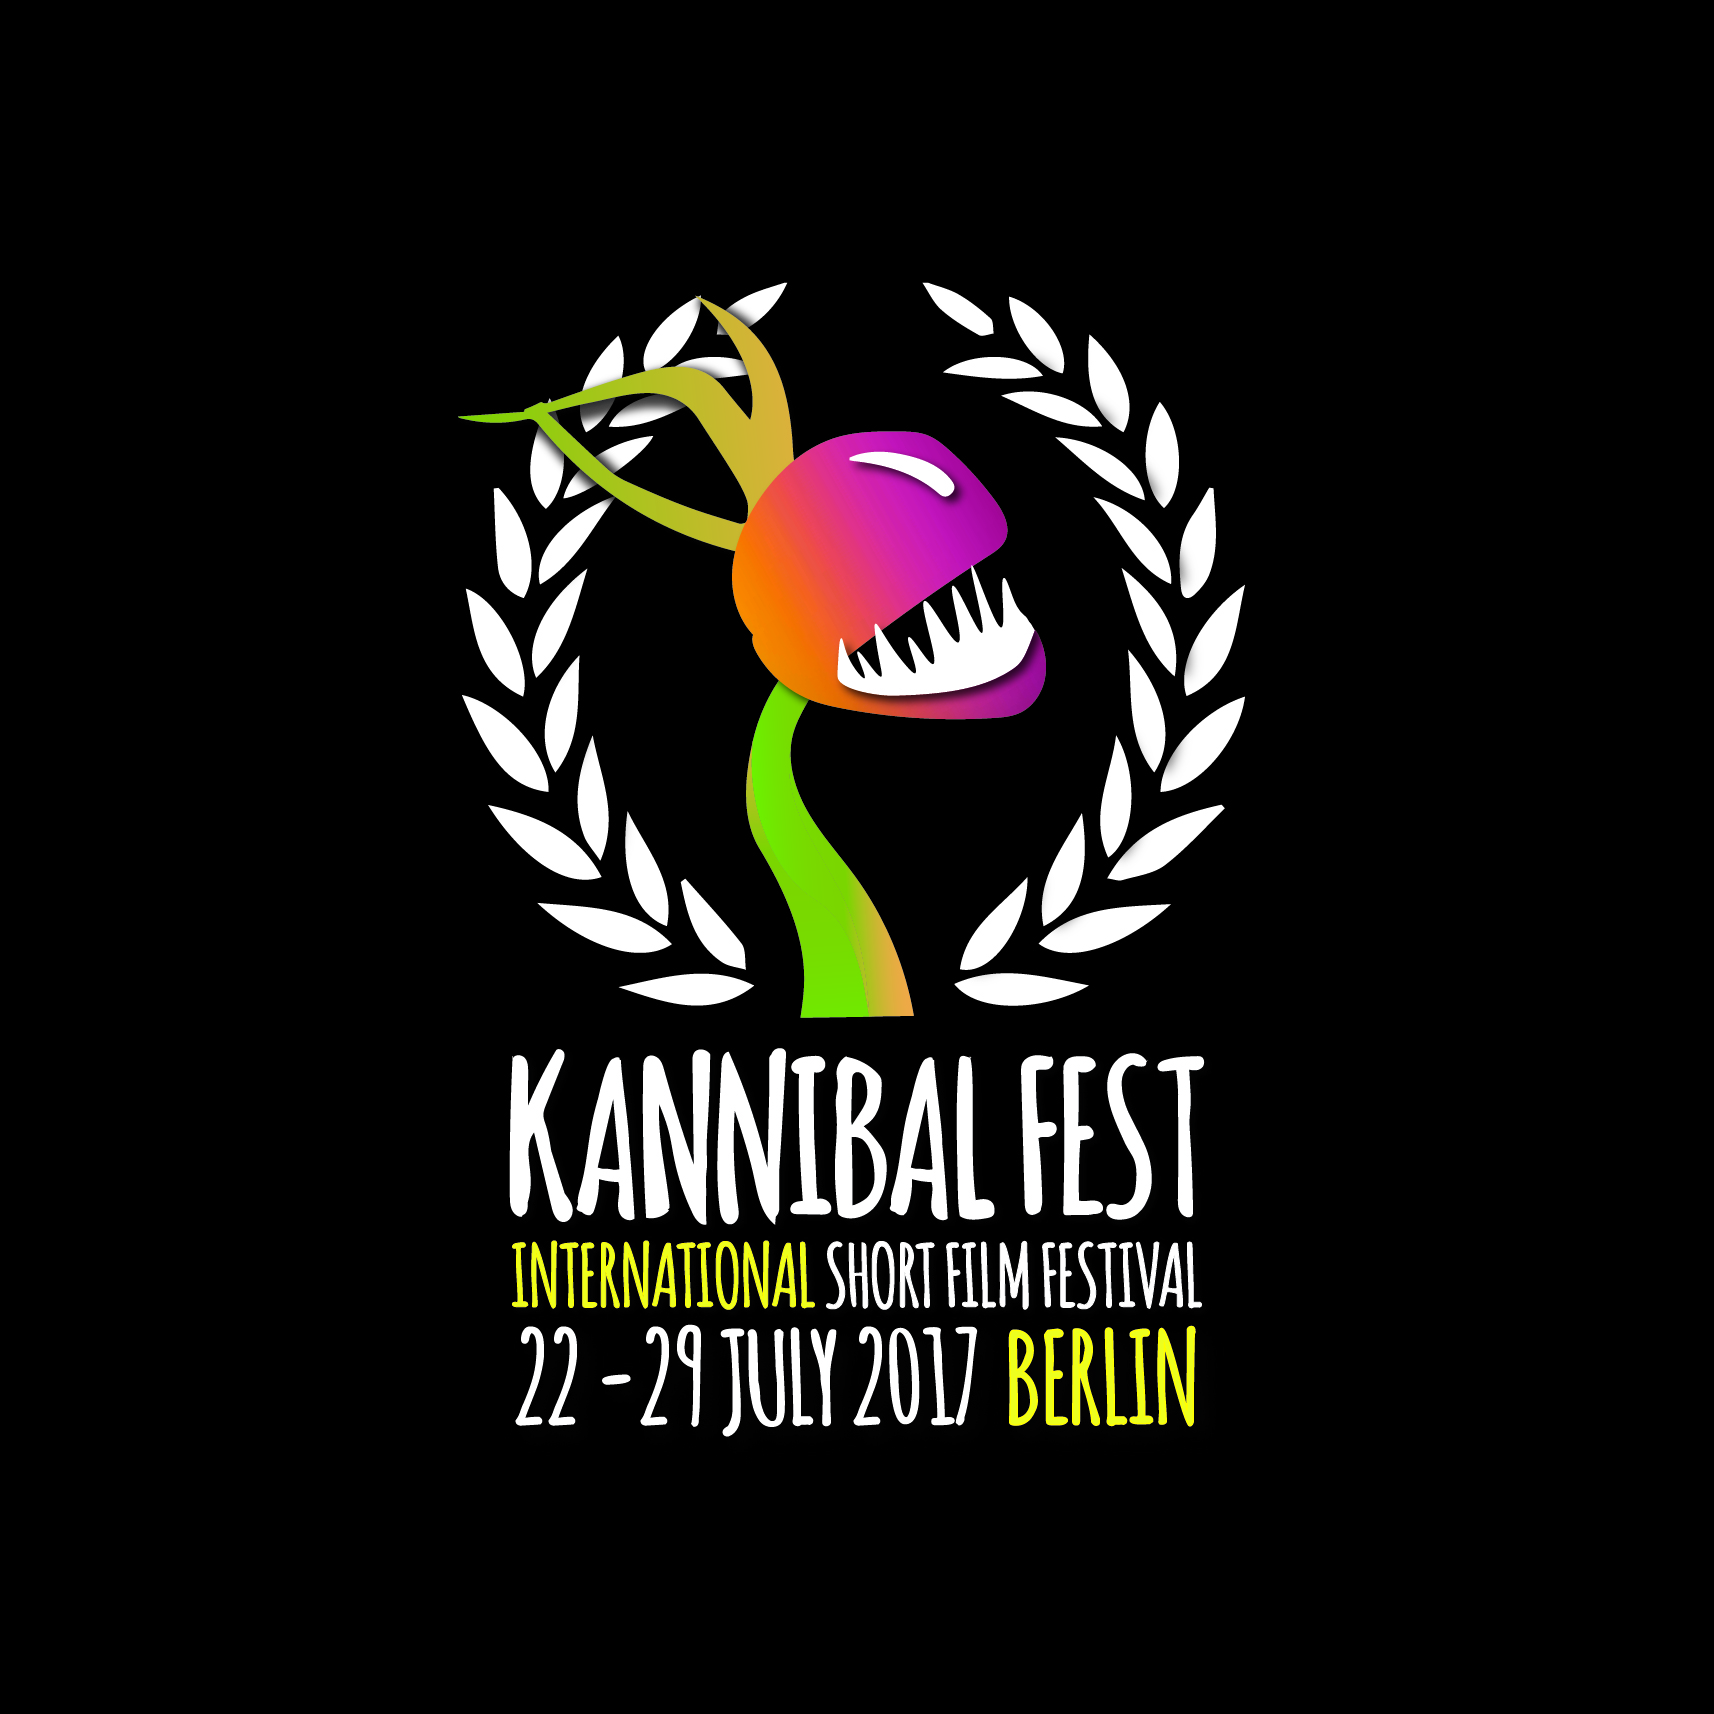 Kannibal Fest 2017 Berlin; Short Film Festival